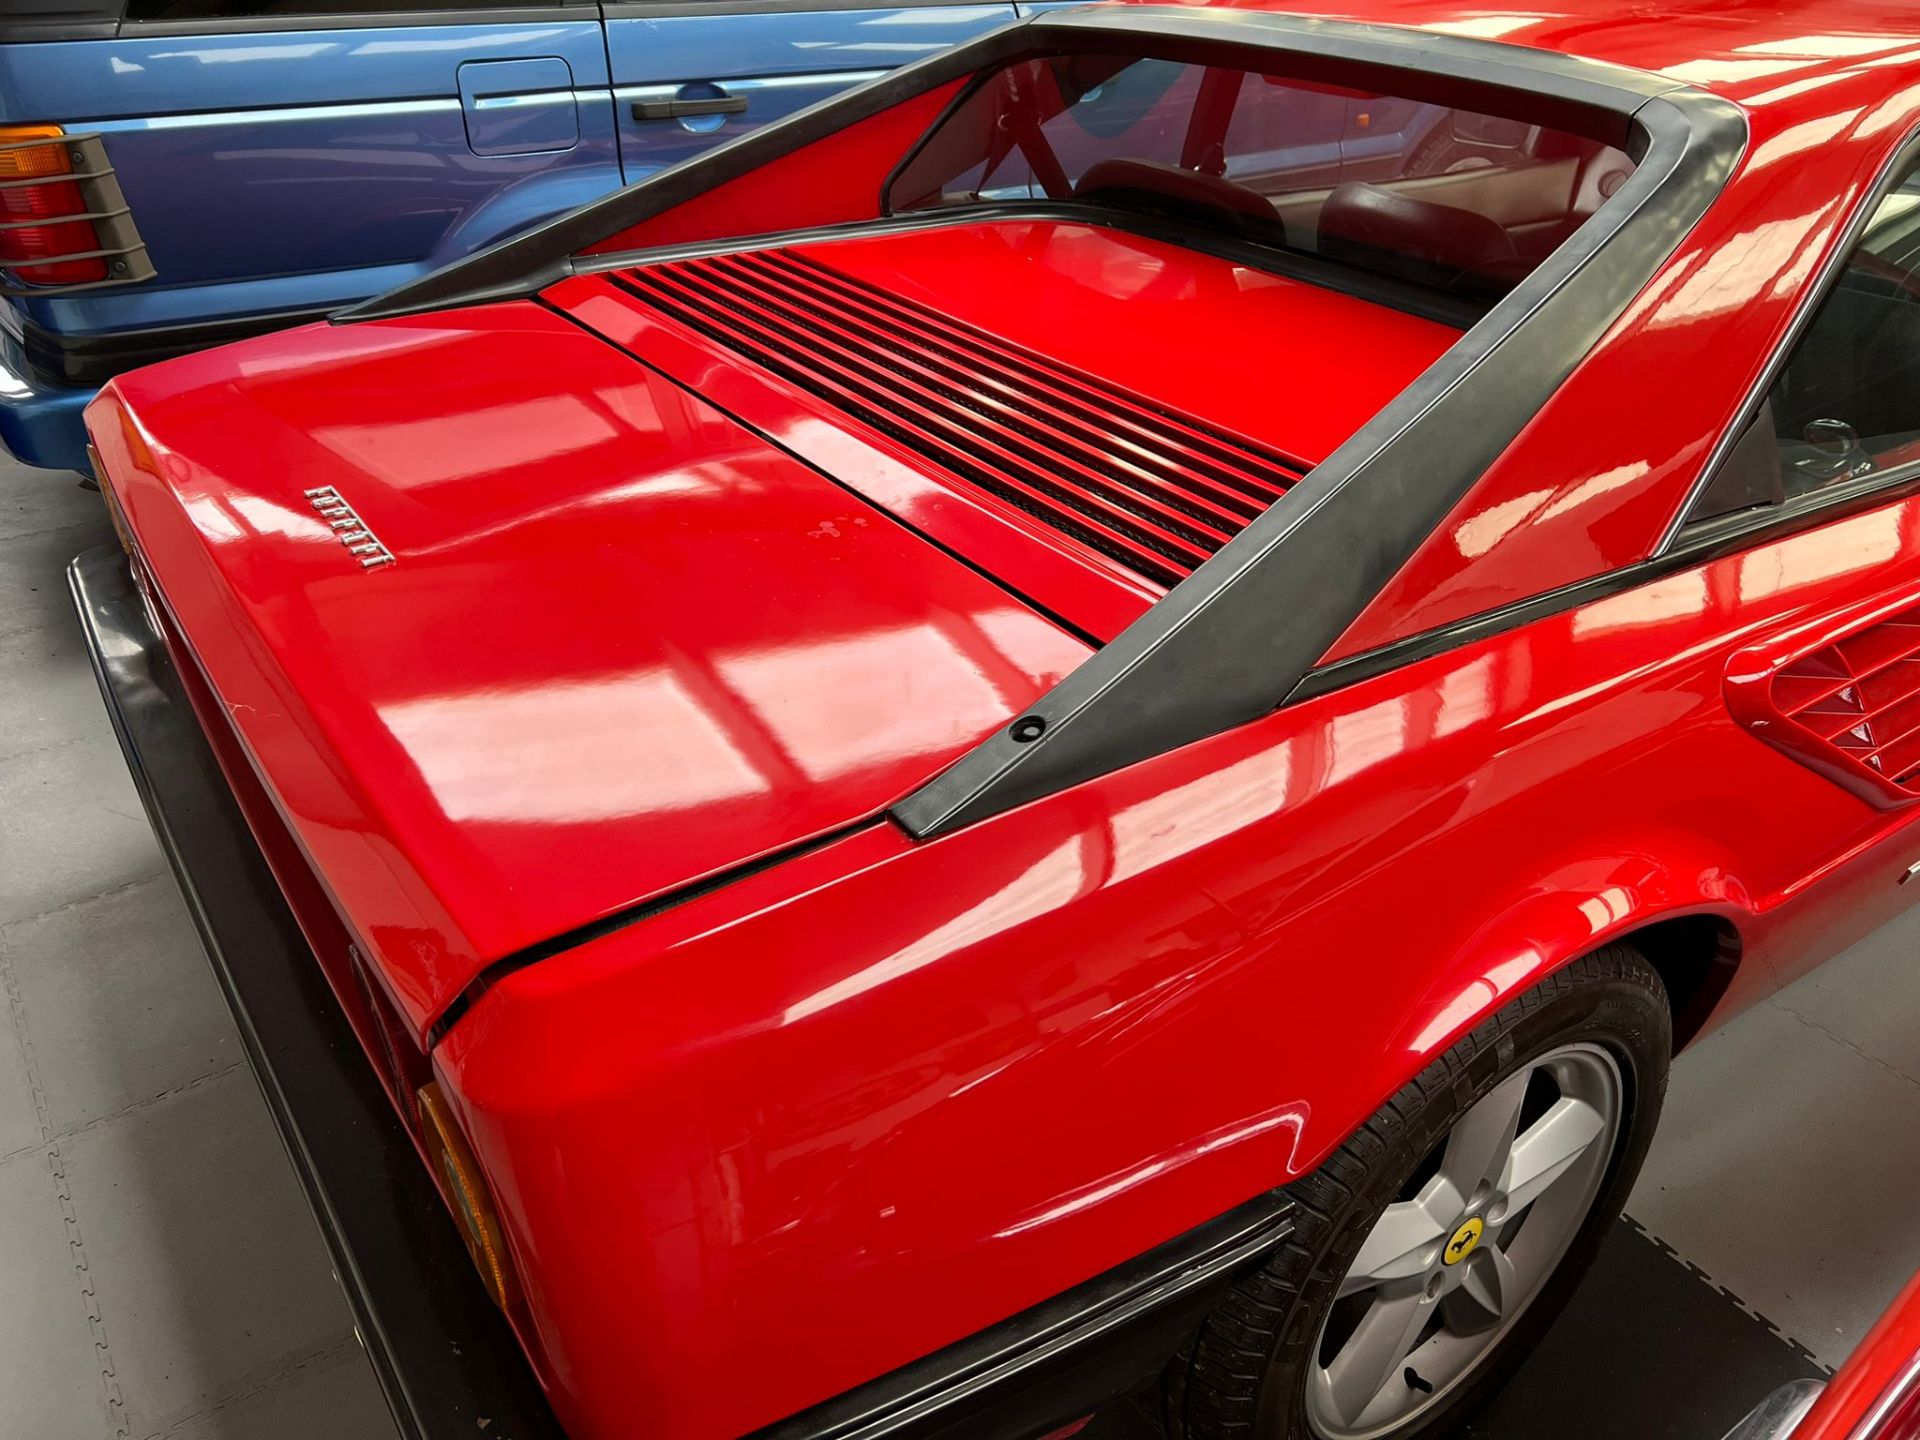 Ferrari Mondial Quattrovalvole Coupe 1984 - Image 9 of 30